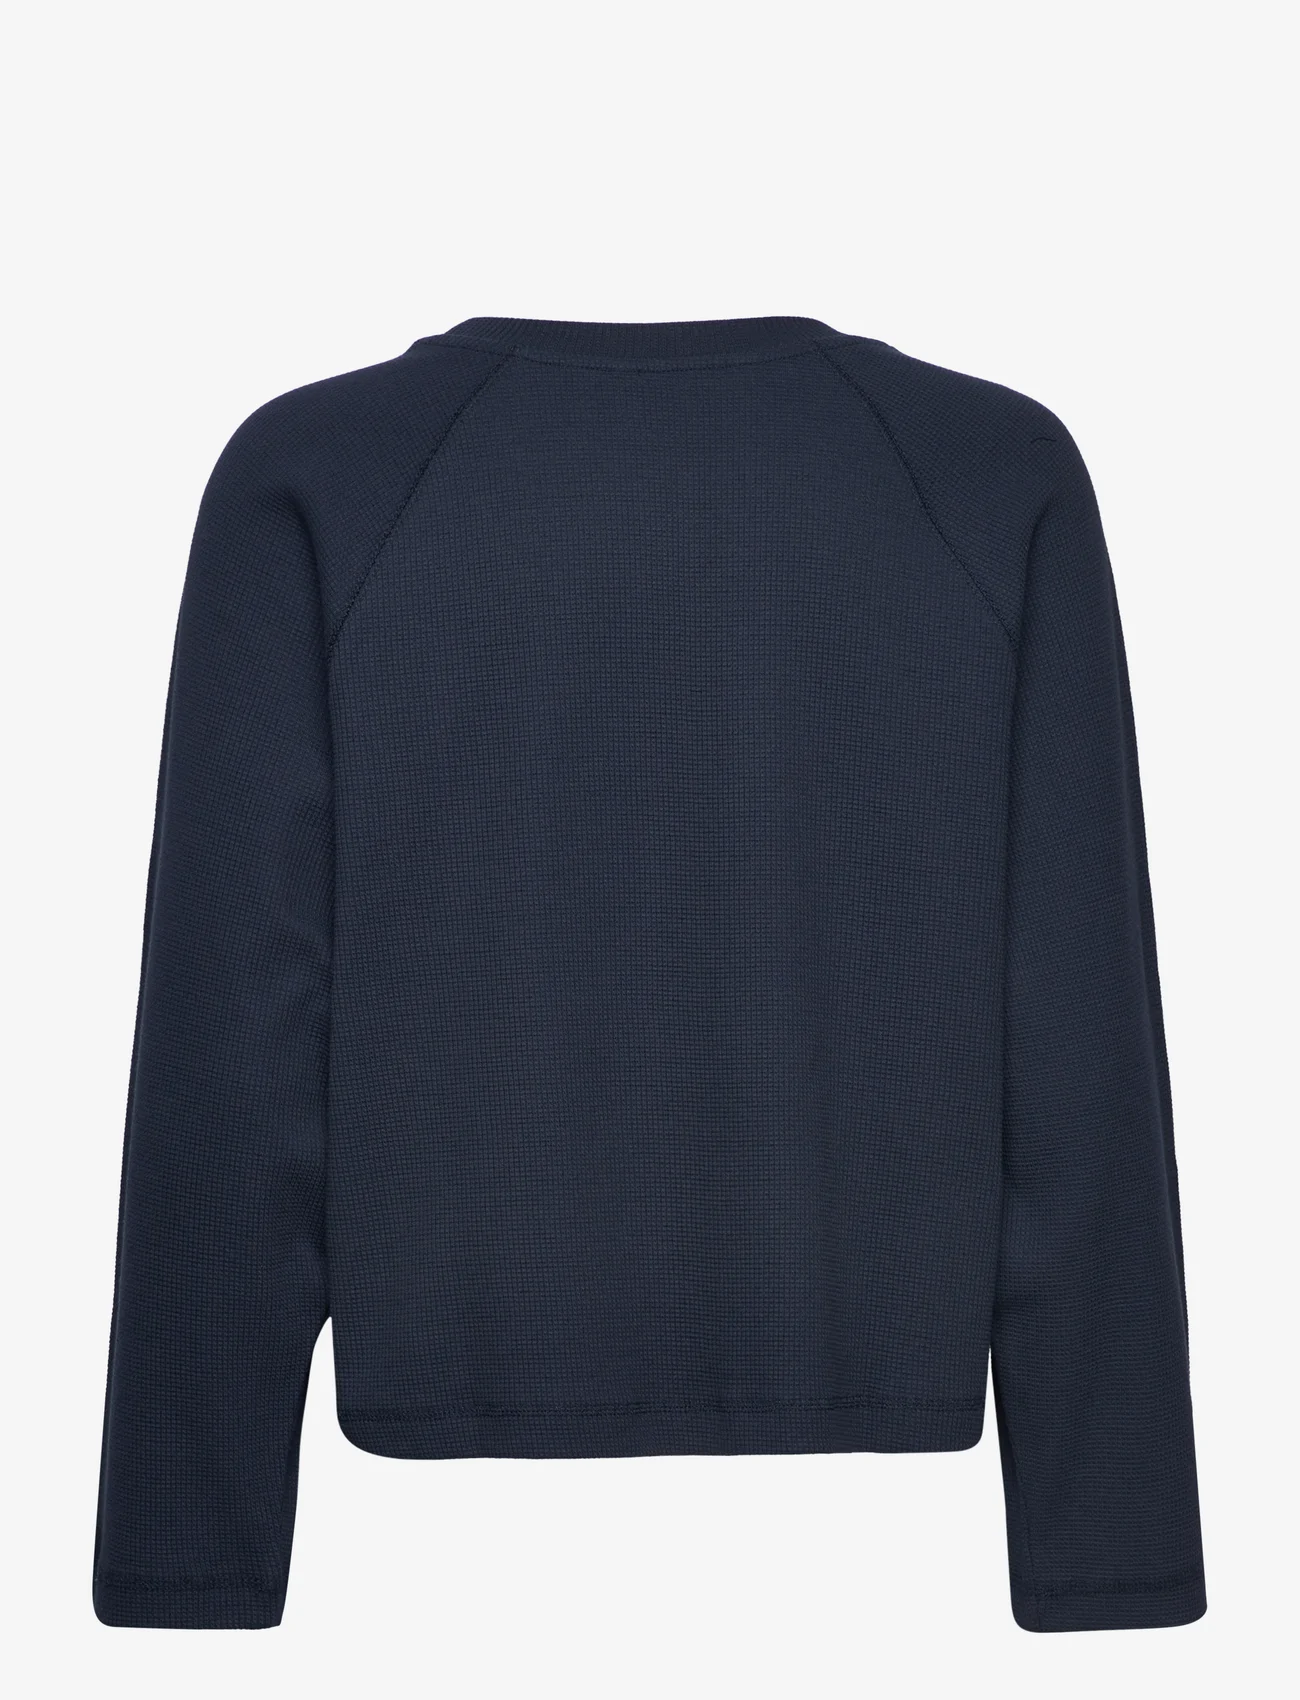 Basic Apparel - Barbara Sweatshirt GOTS - sweatshirts & hoodies - navy - 1